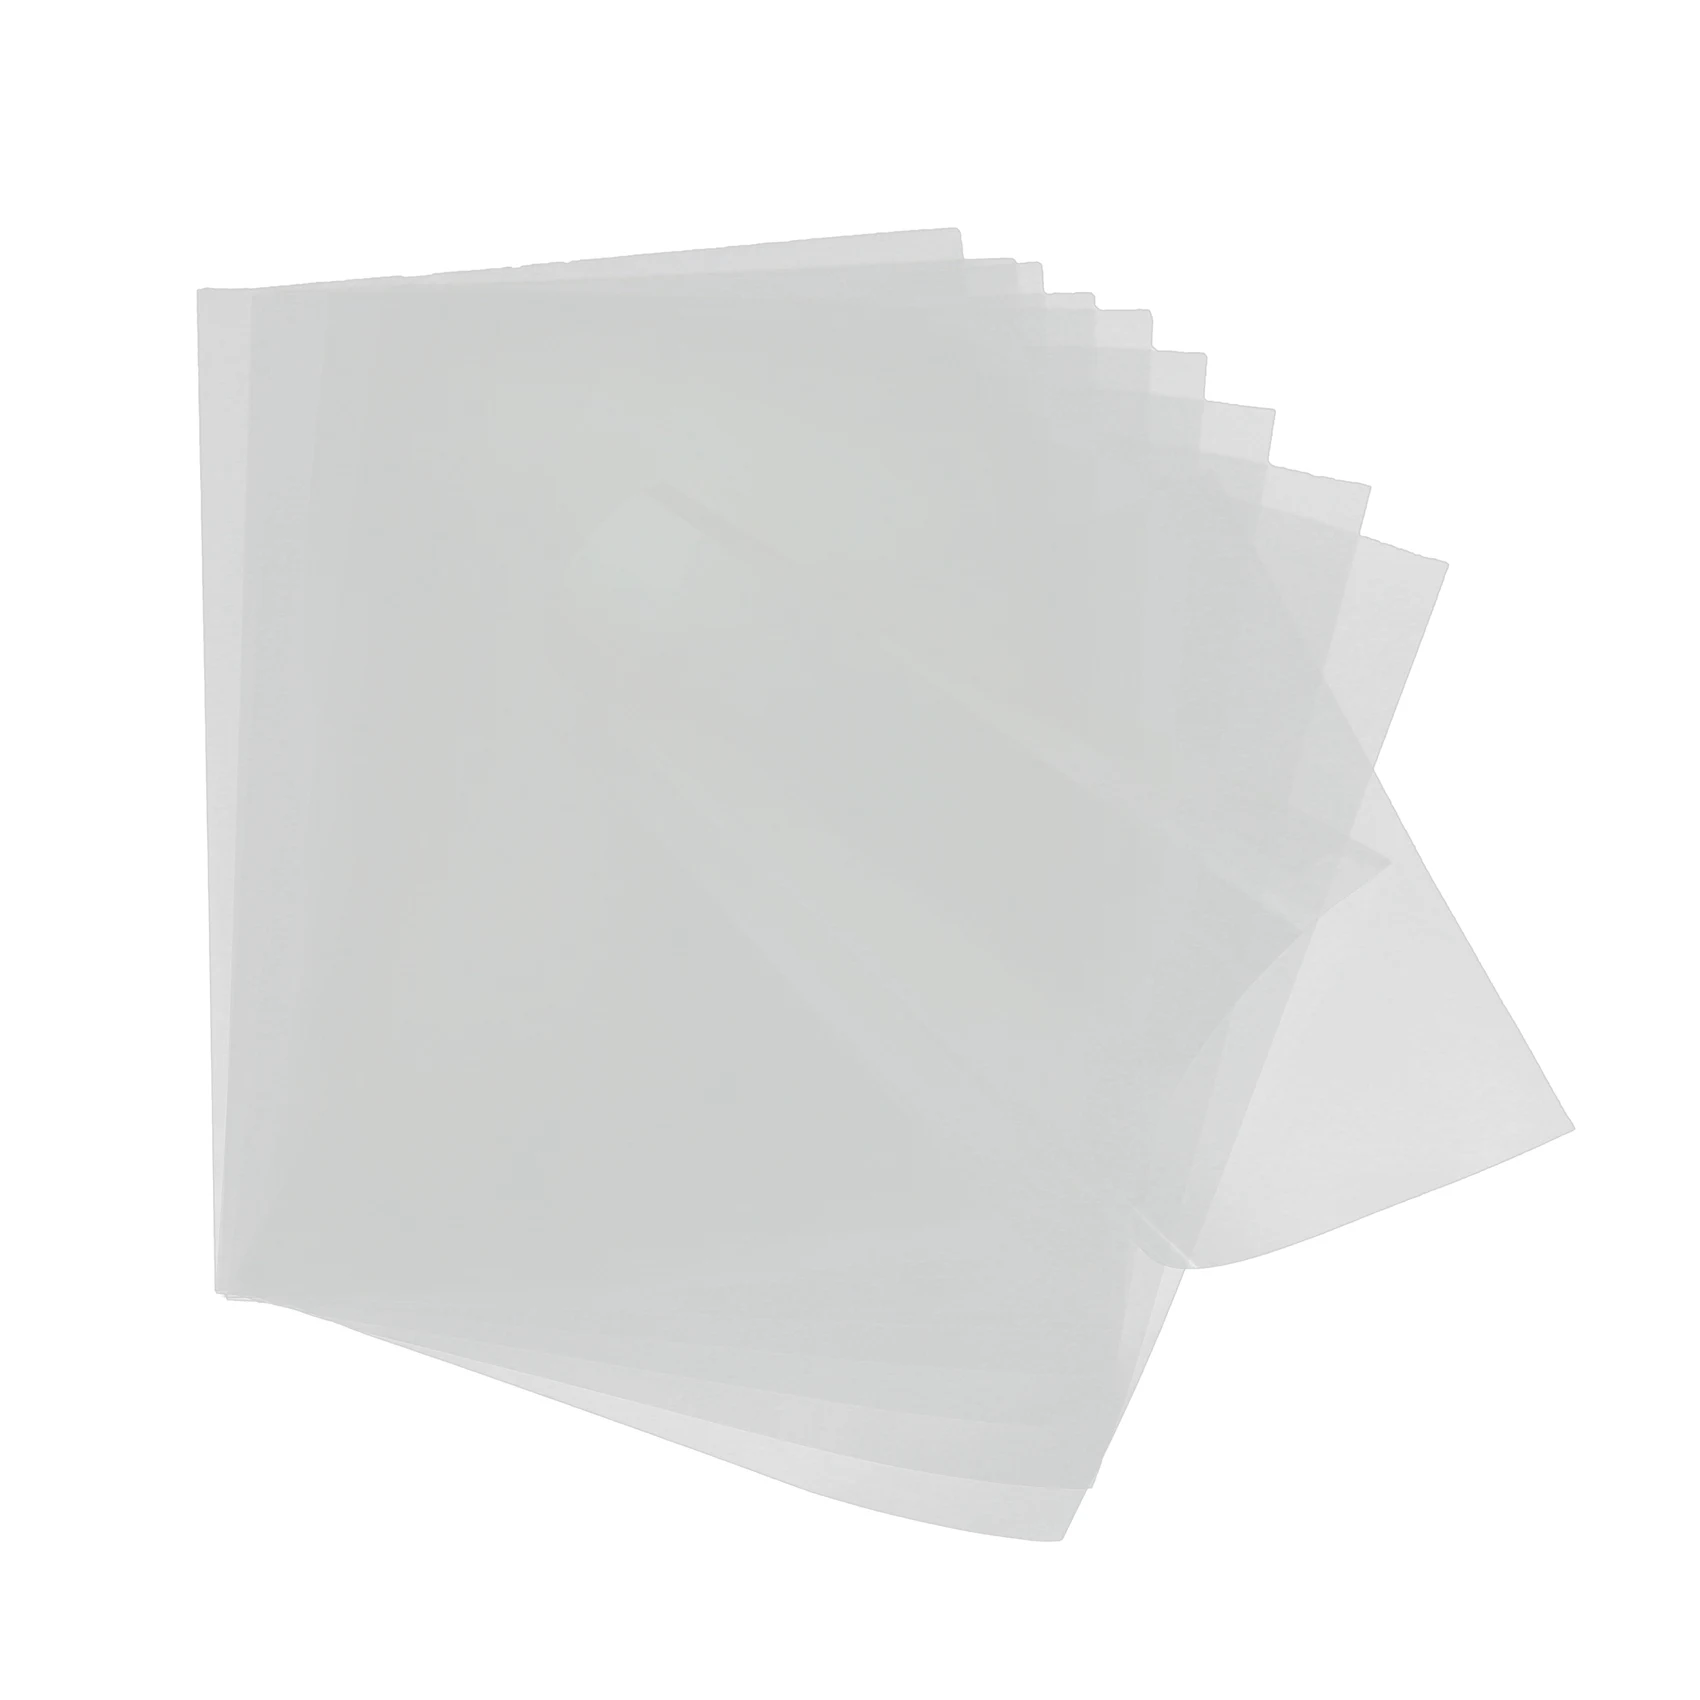 

10 шт. листов, прозрачная пленка для струйной печати